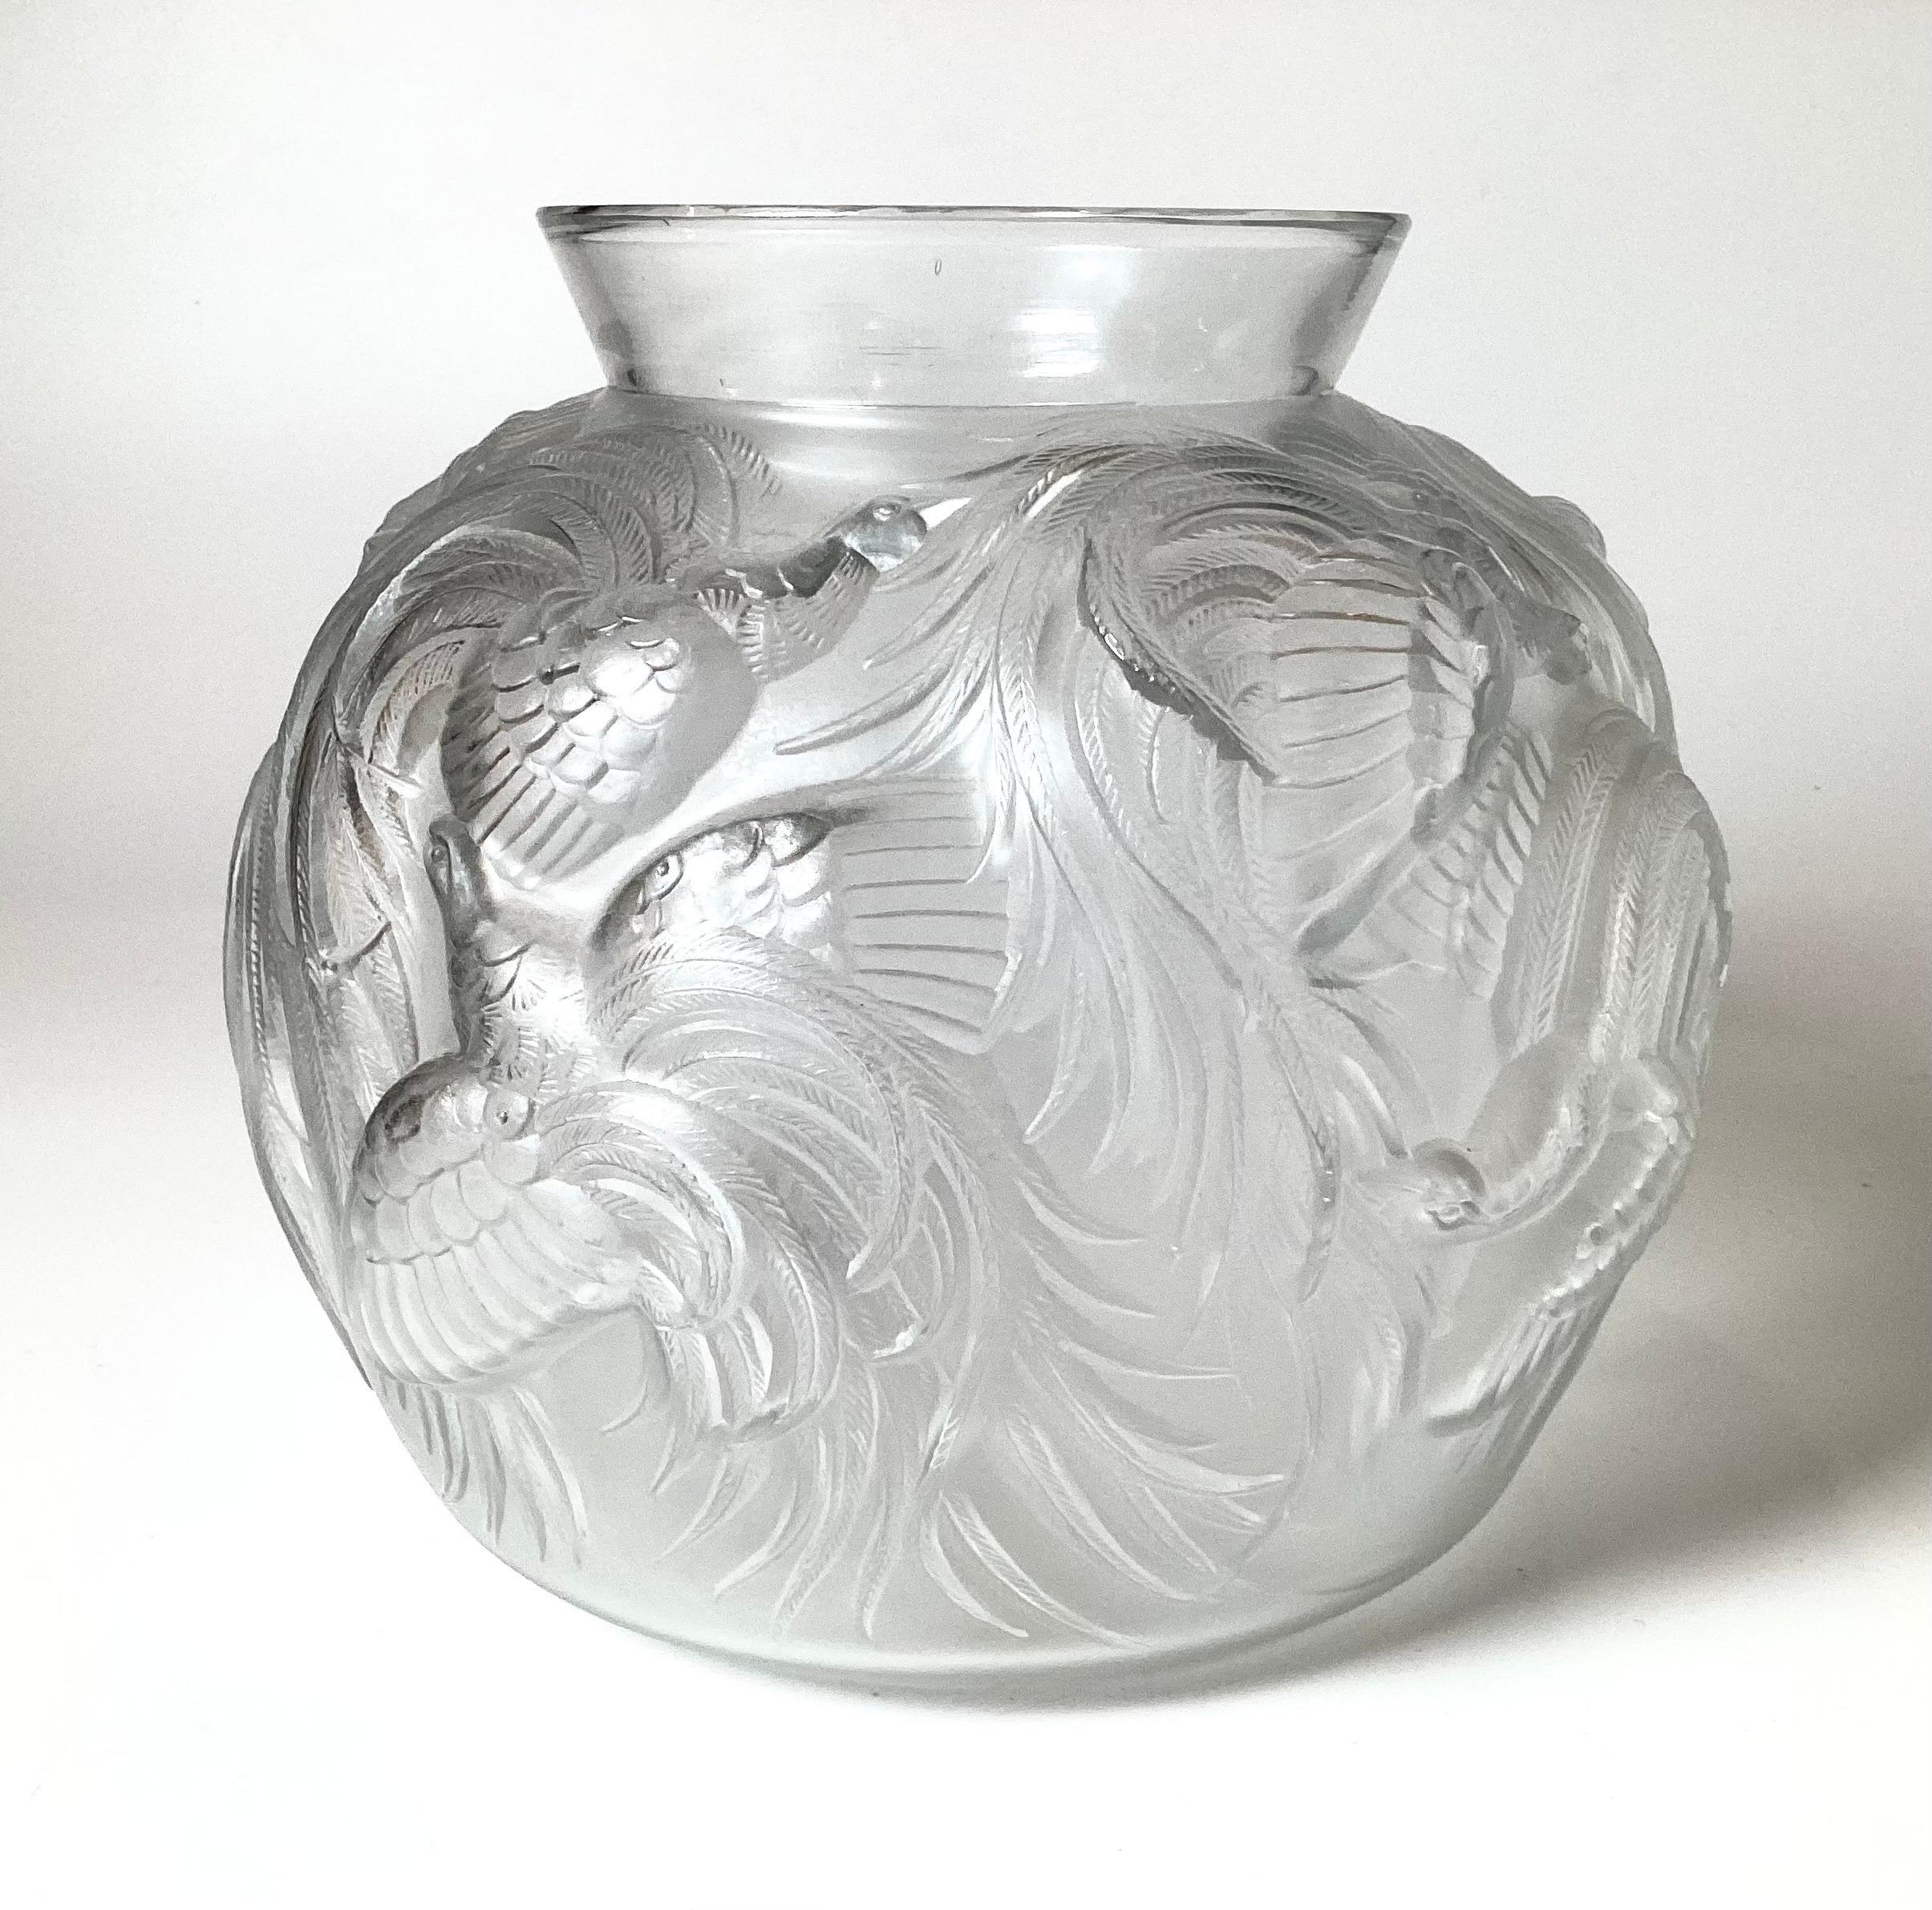 Élégant vase en verre d'art avec des oiseaux de paradis par Sabino de France, une pièce de production précoce, signée sur la base. Le vase bulbeux avec une décoration gracieuse sur tout le pourtour avec une surface givrée de type Lalique.